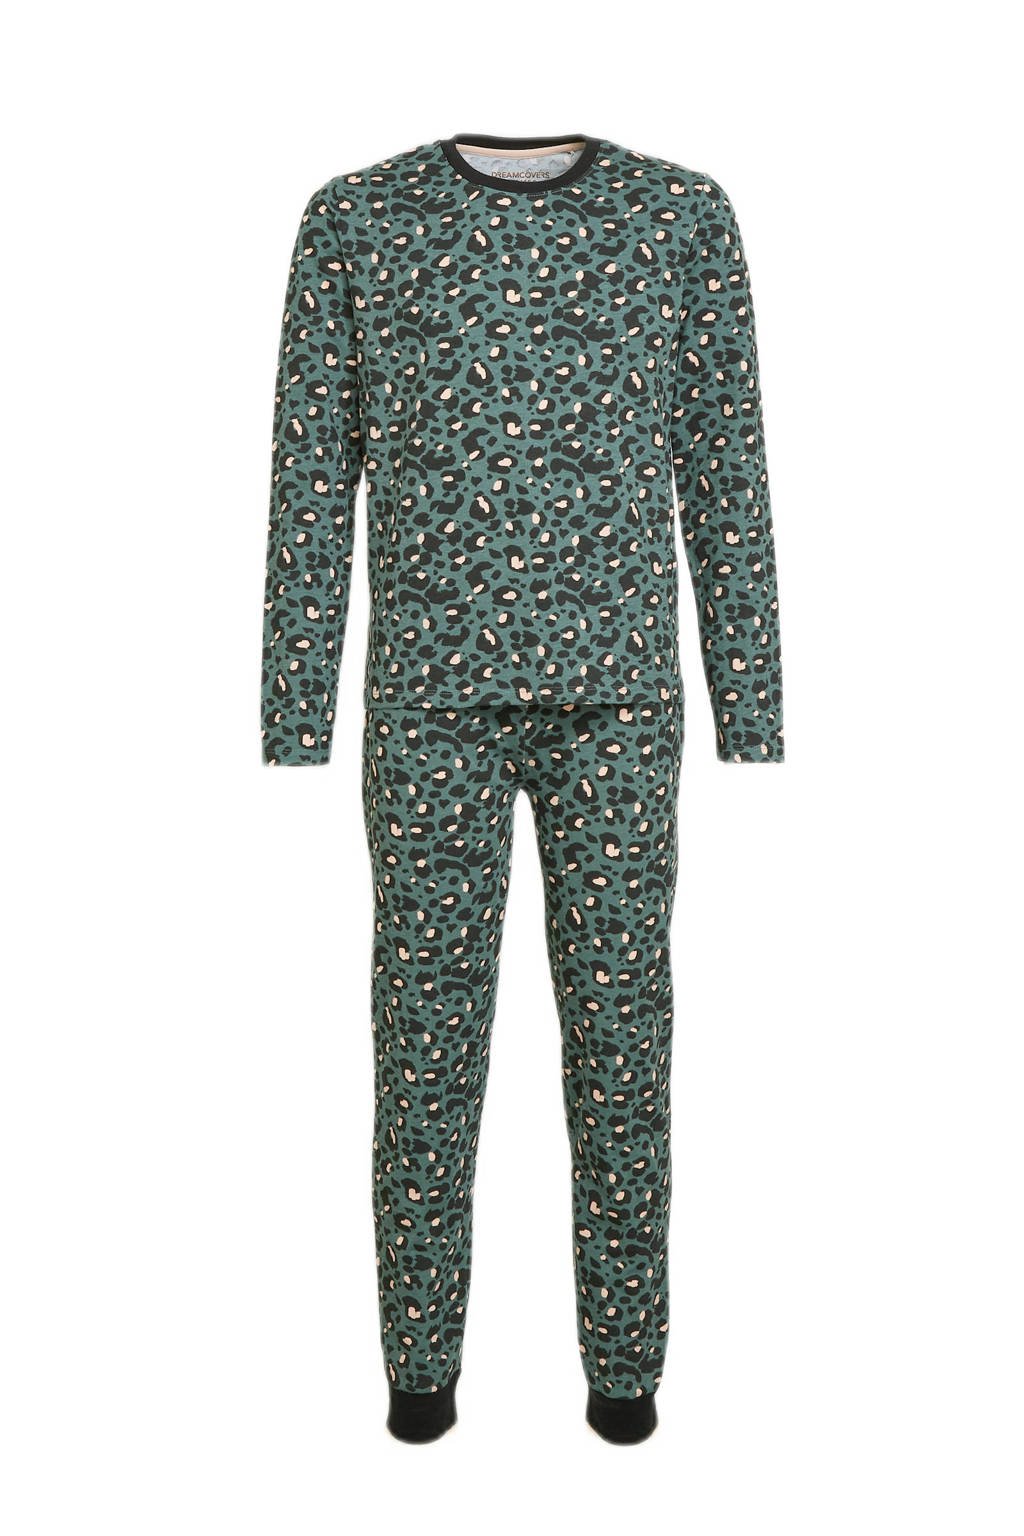 Dreamcovers pyjama met panterprint groen